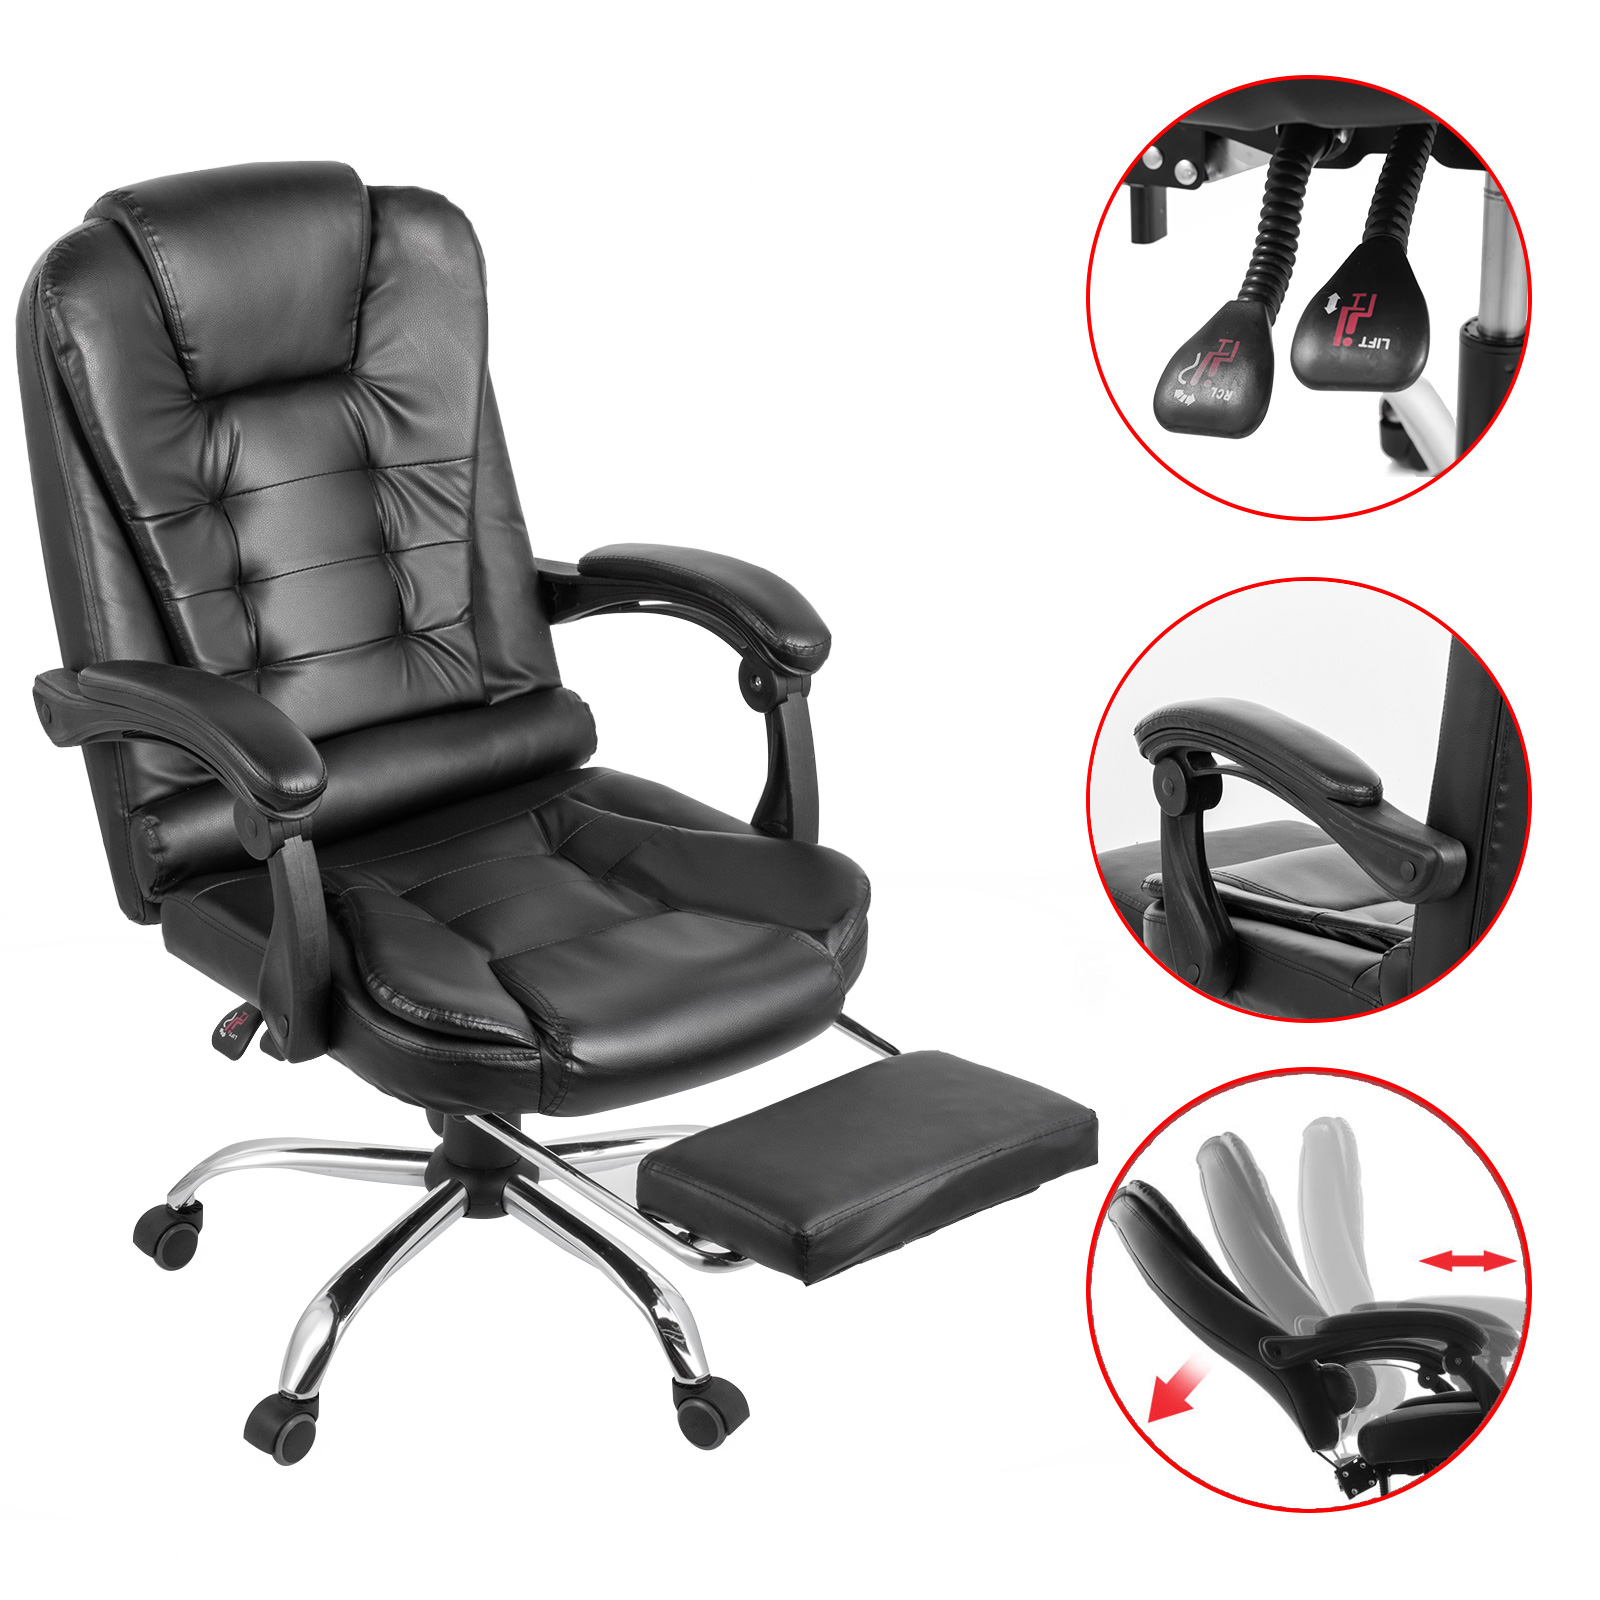 Chaise de bureau ergonomique pour enfants avec repose-pieds, accoudoir